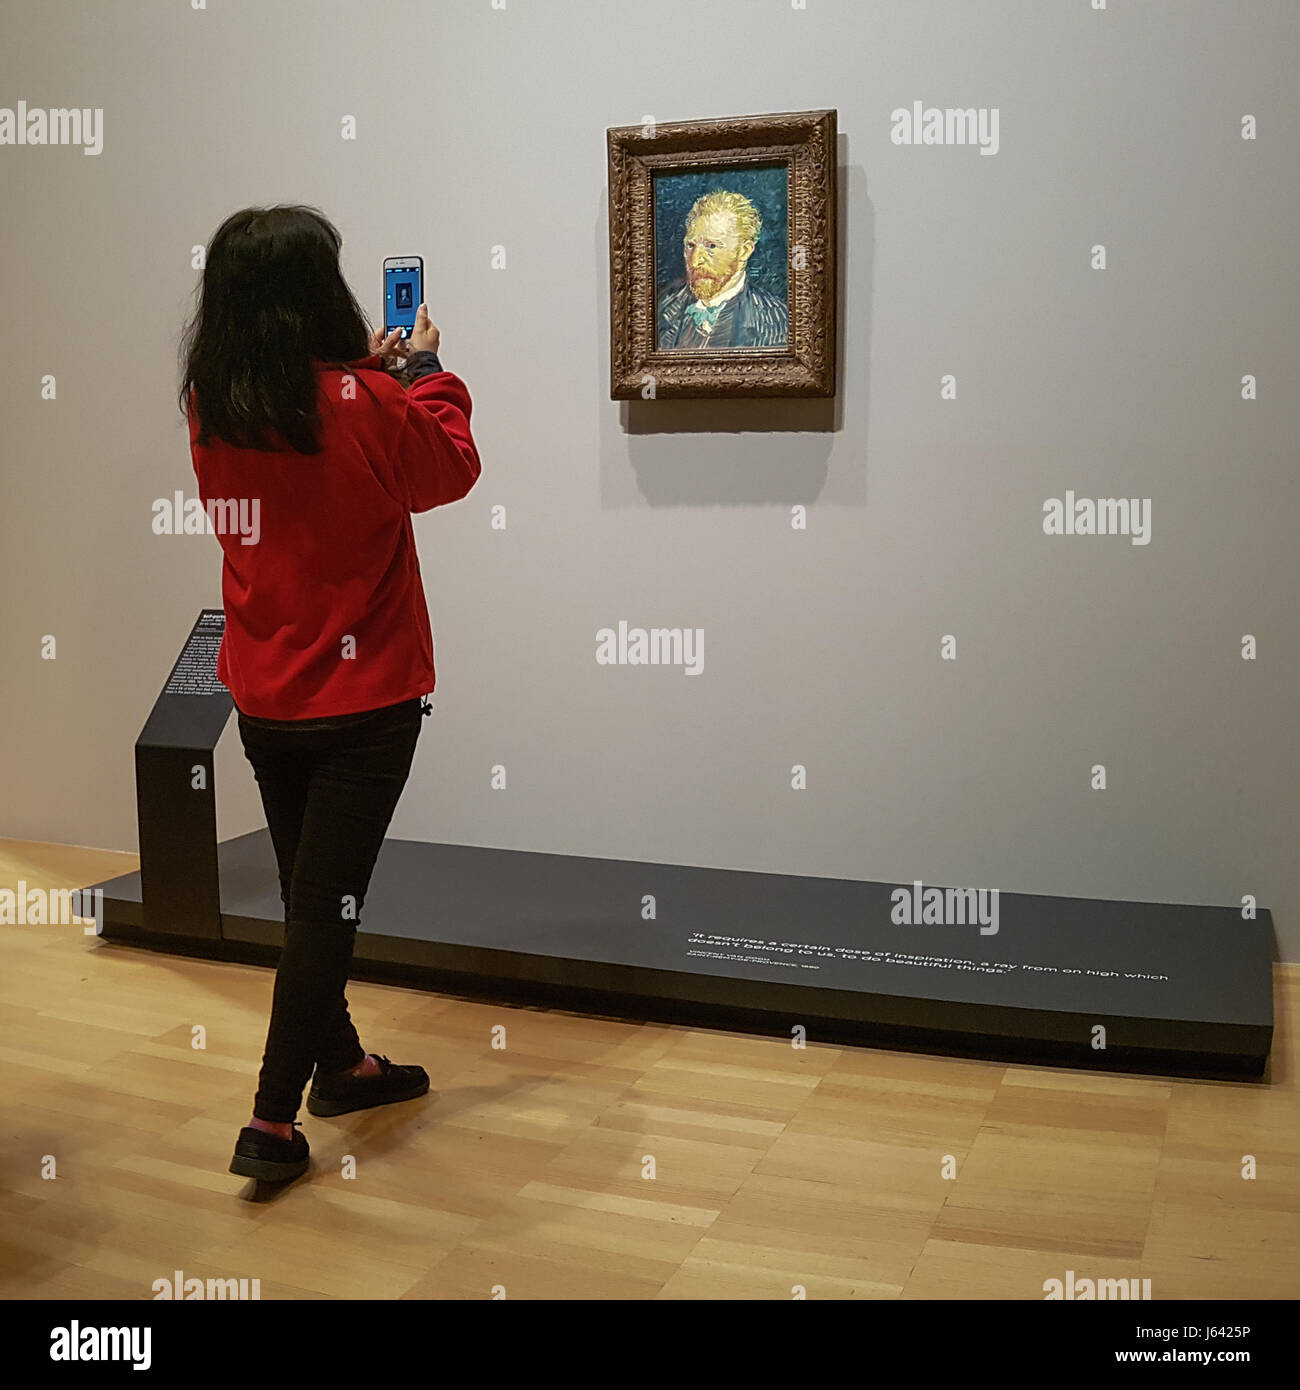 Art appreciation in the digital age Stock Photo